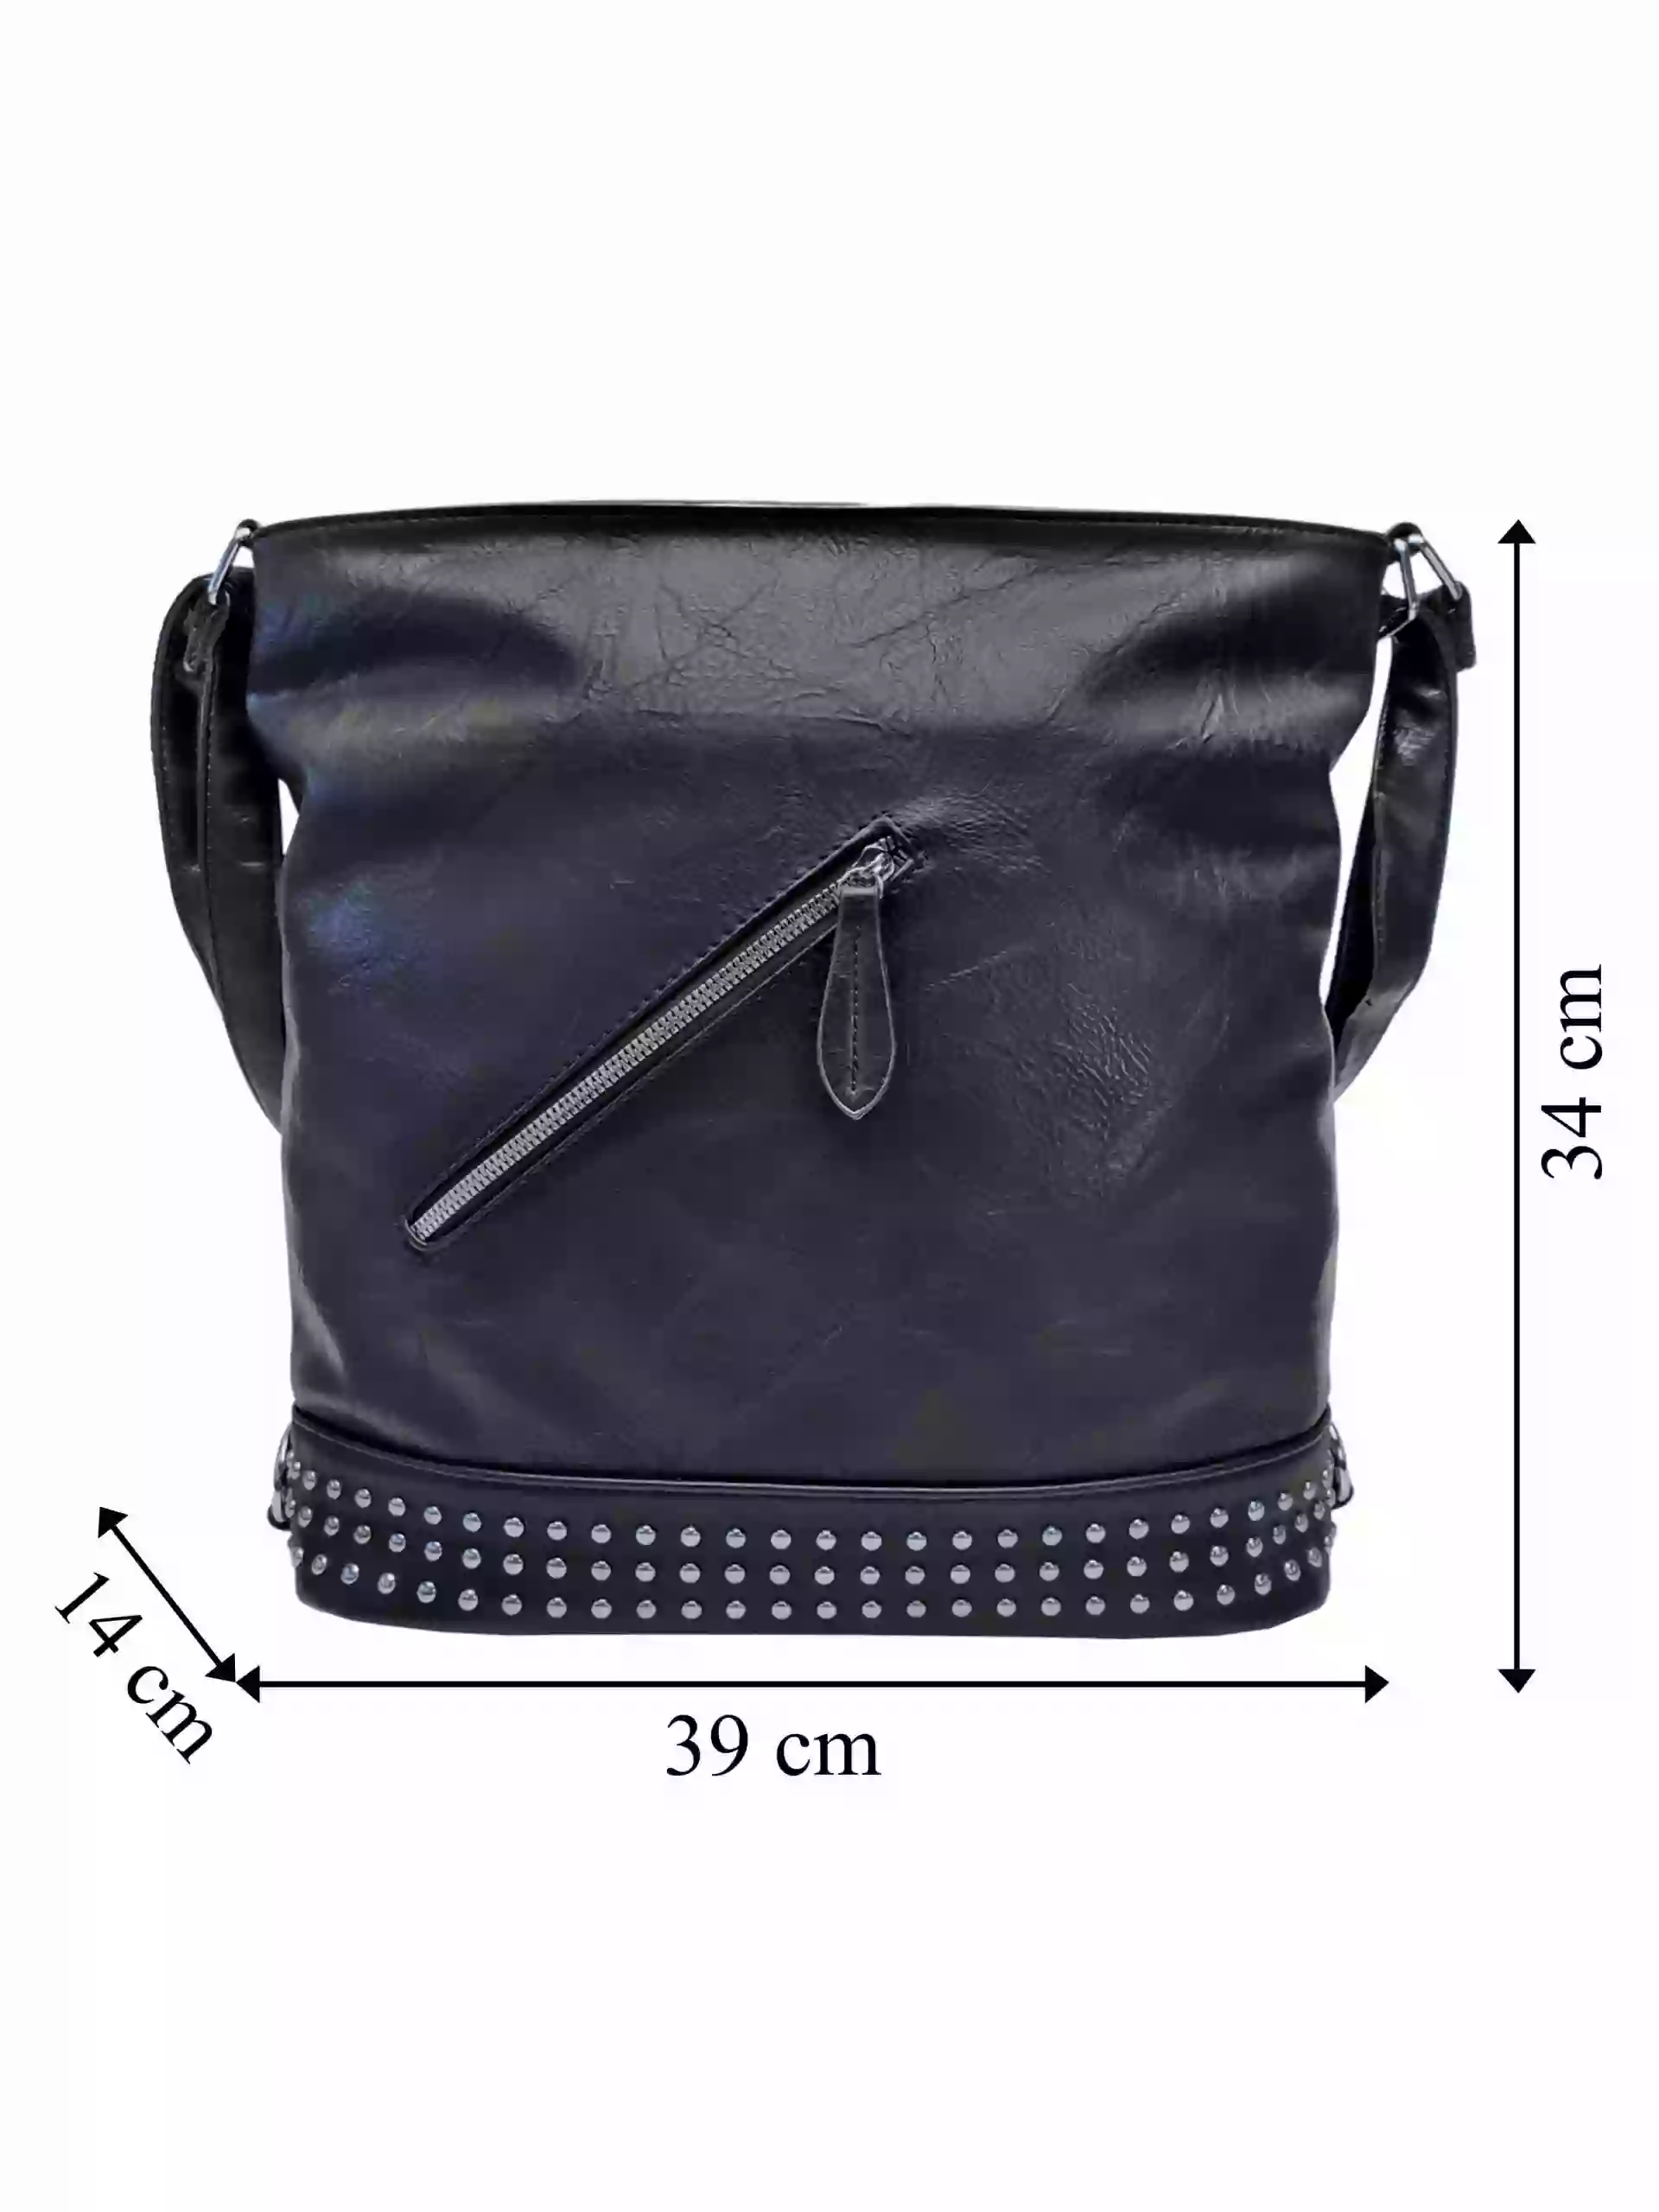 Velká černá kabelka a batoh 2v1 s šikmou kapsou, Jessica Bags, 2034, přední strana kabelky a batohu 2v1 s rozměry